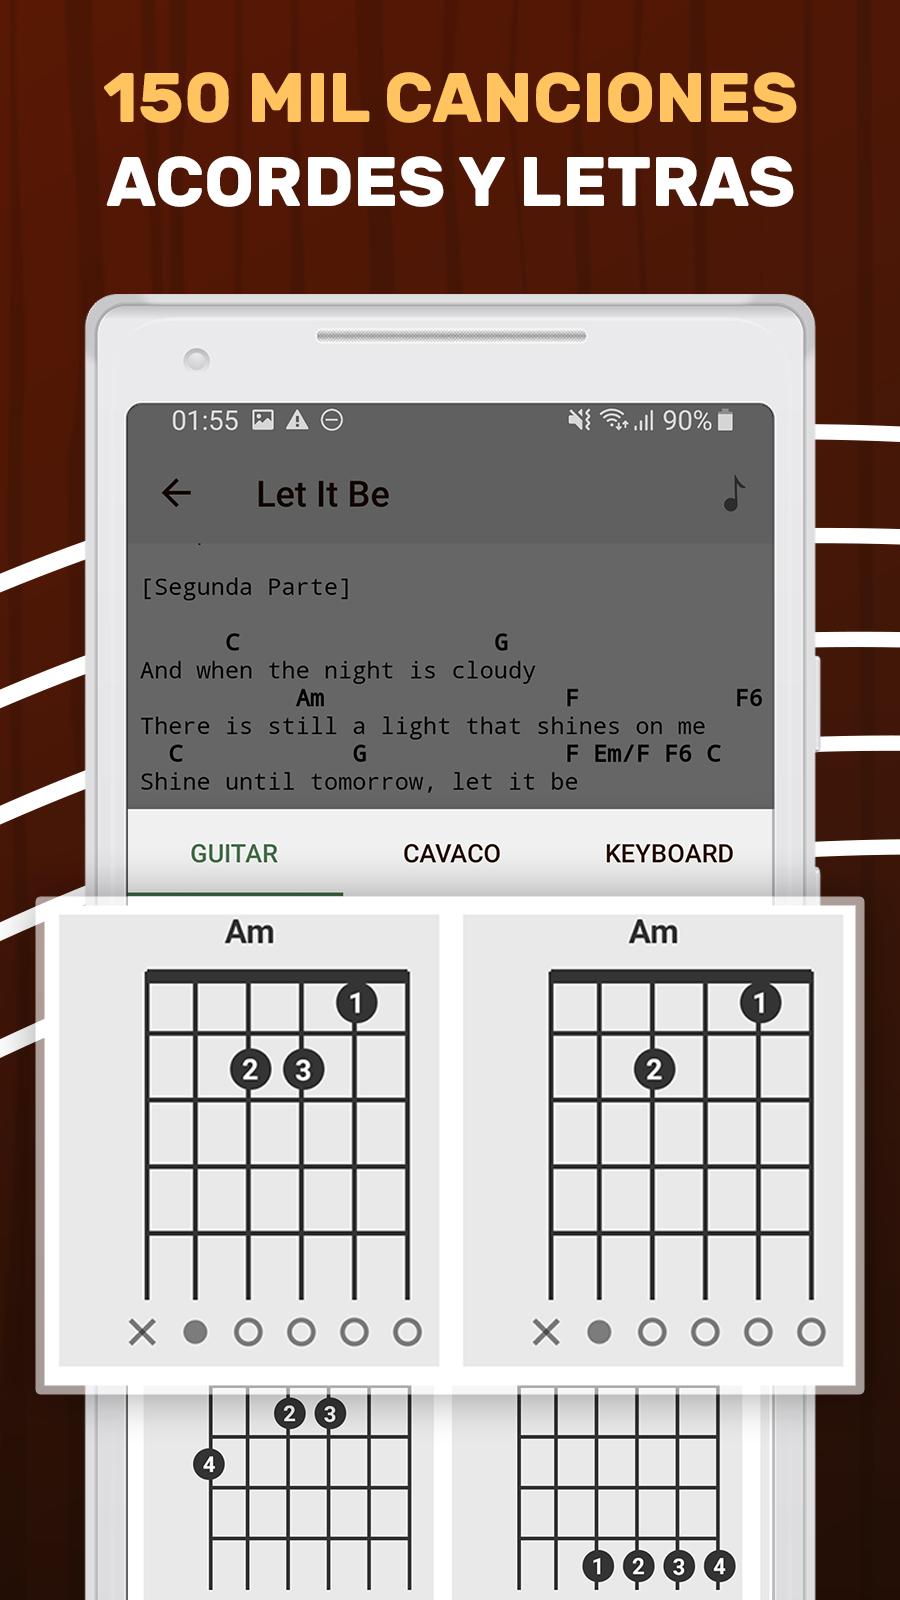 Cancionero Acordes De Guitarra Y Letras Canciones For Android Apk Download Las canciones mas populares en lacuerda. acordes de guitarra y letras canciones